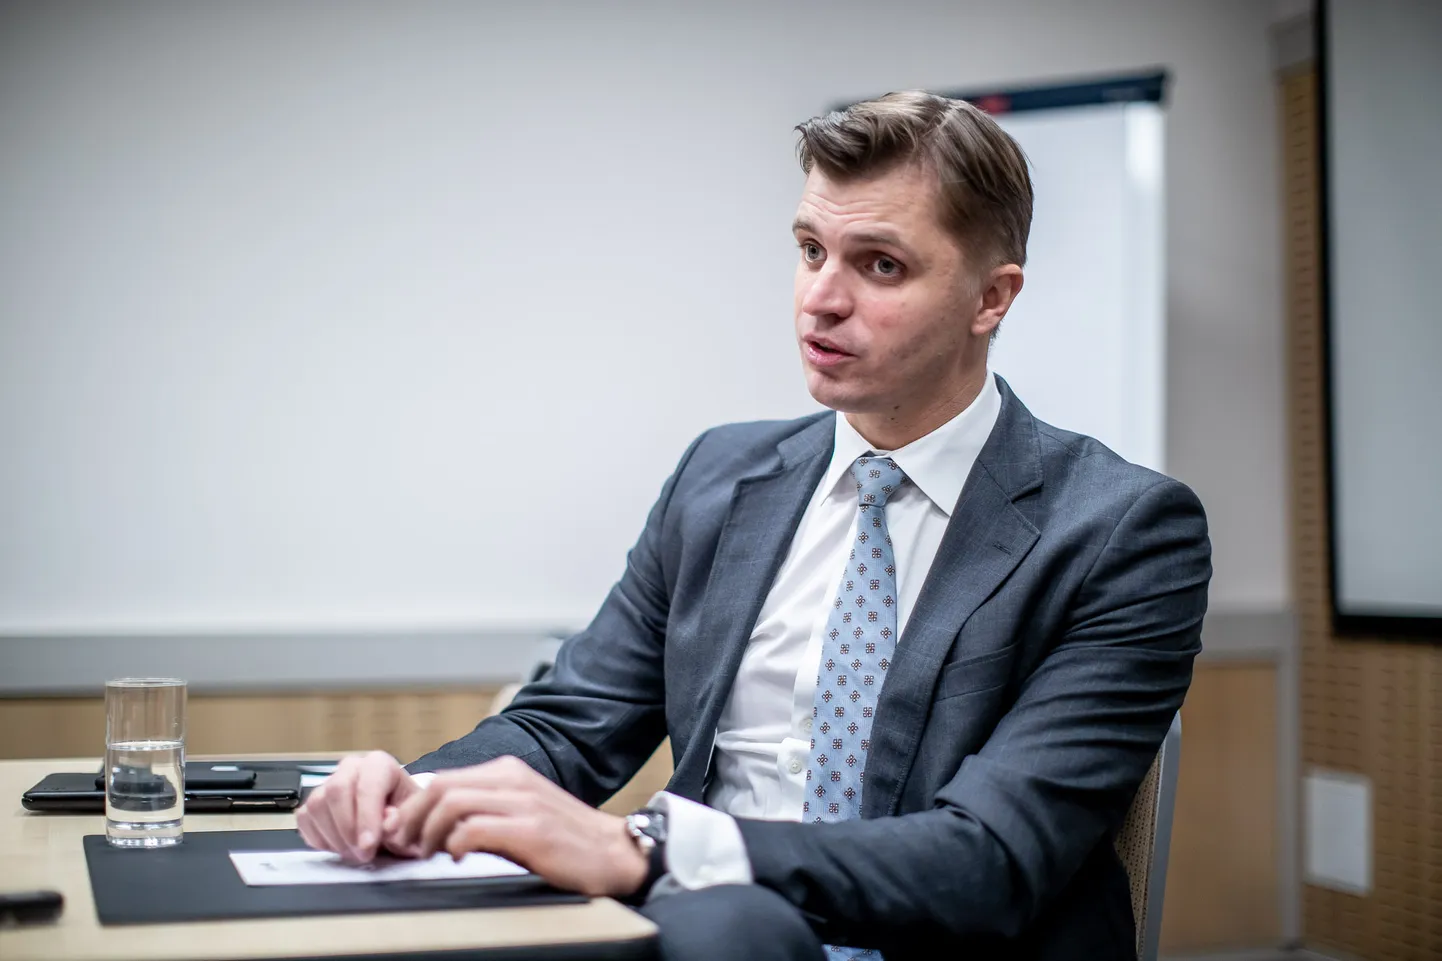 Giedrimas Jeglinskas 2019. aastal NATO abipeasekretärina Postimehele intervjuud andmas.